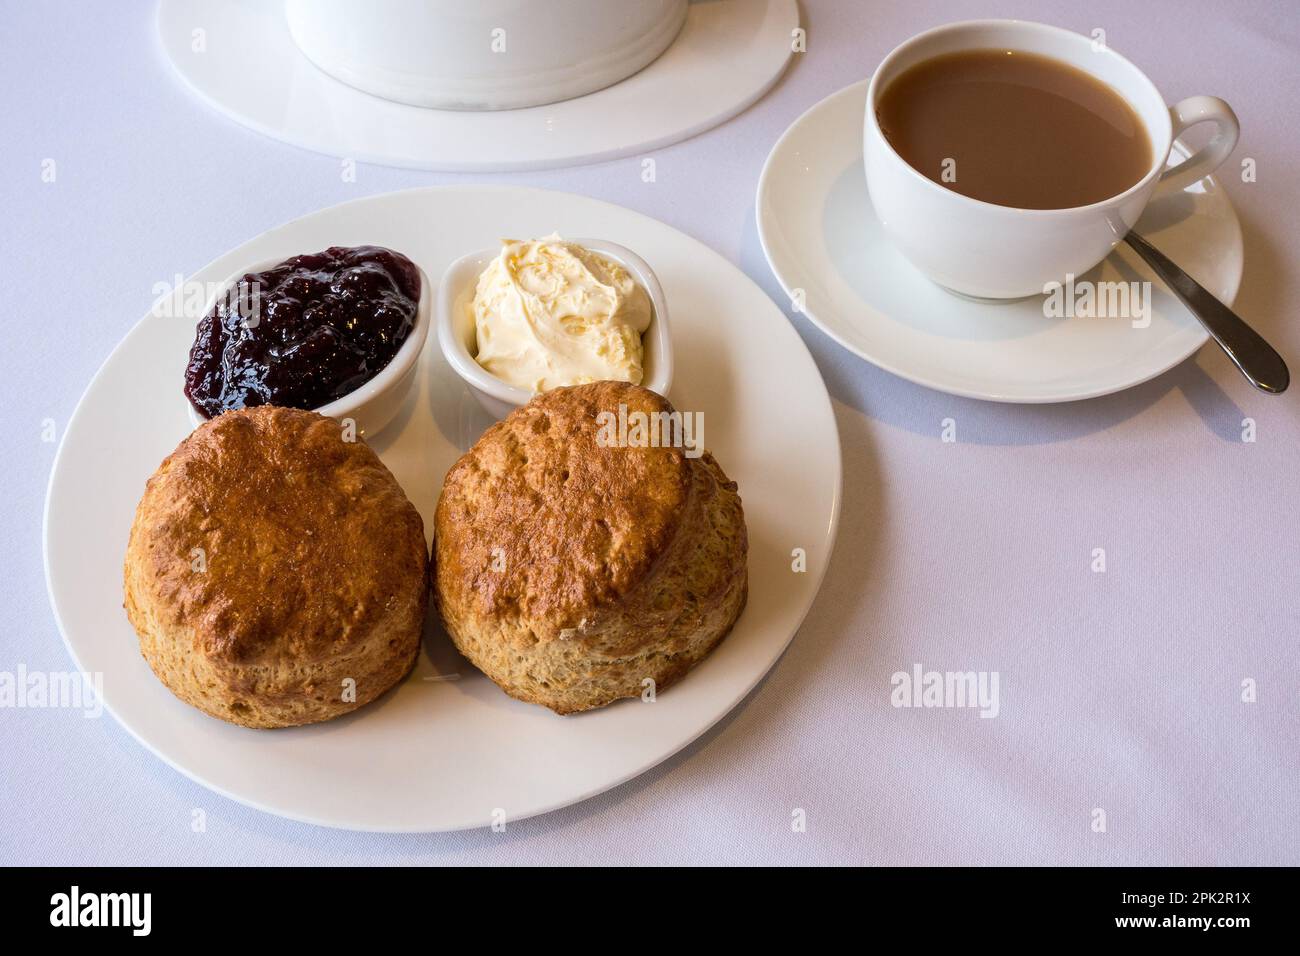 Thé crème avec deux scones frais avec des plats de crème fraîche épaisse et confiture avec une tasse de thé servi sur de la vaisselle blanche propre et de la nappe. Banque D'Images